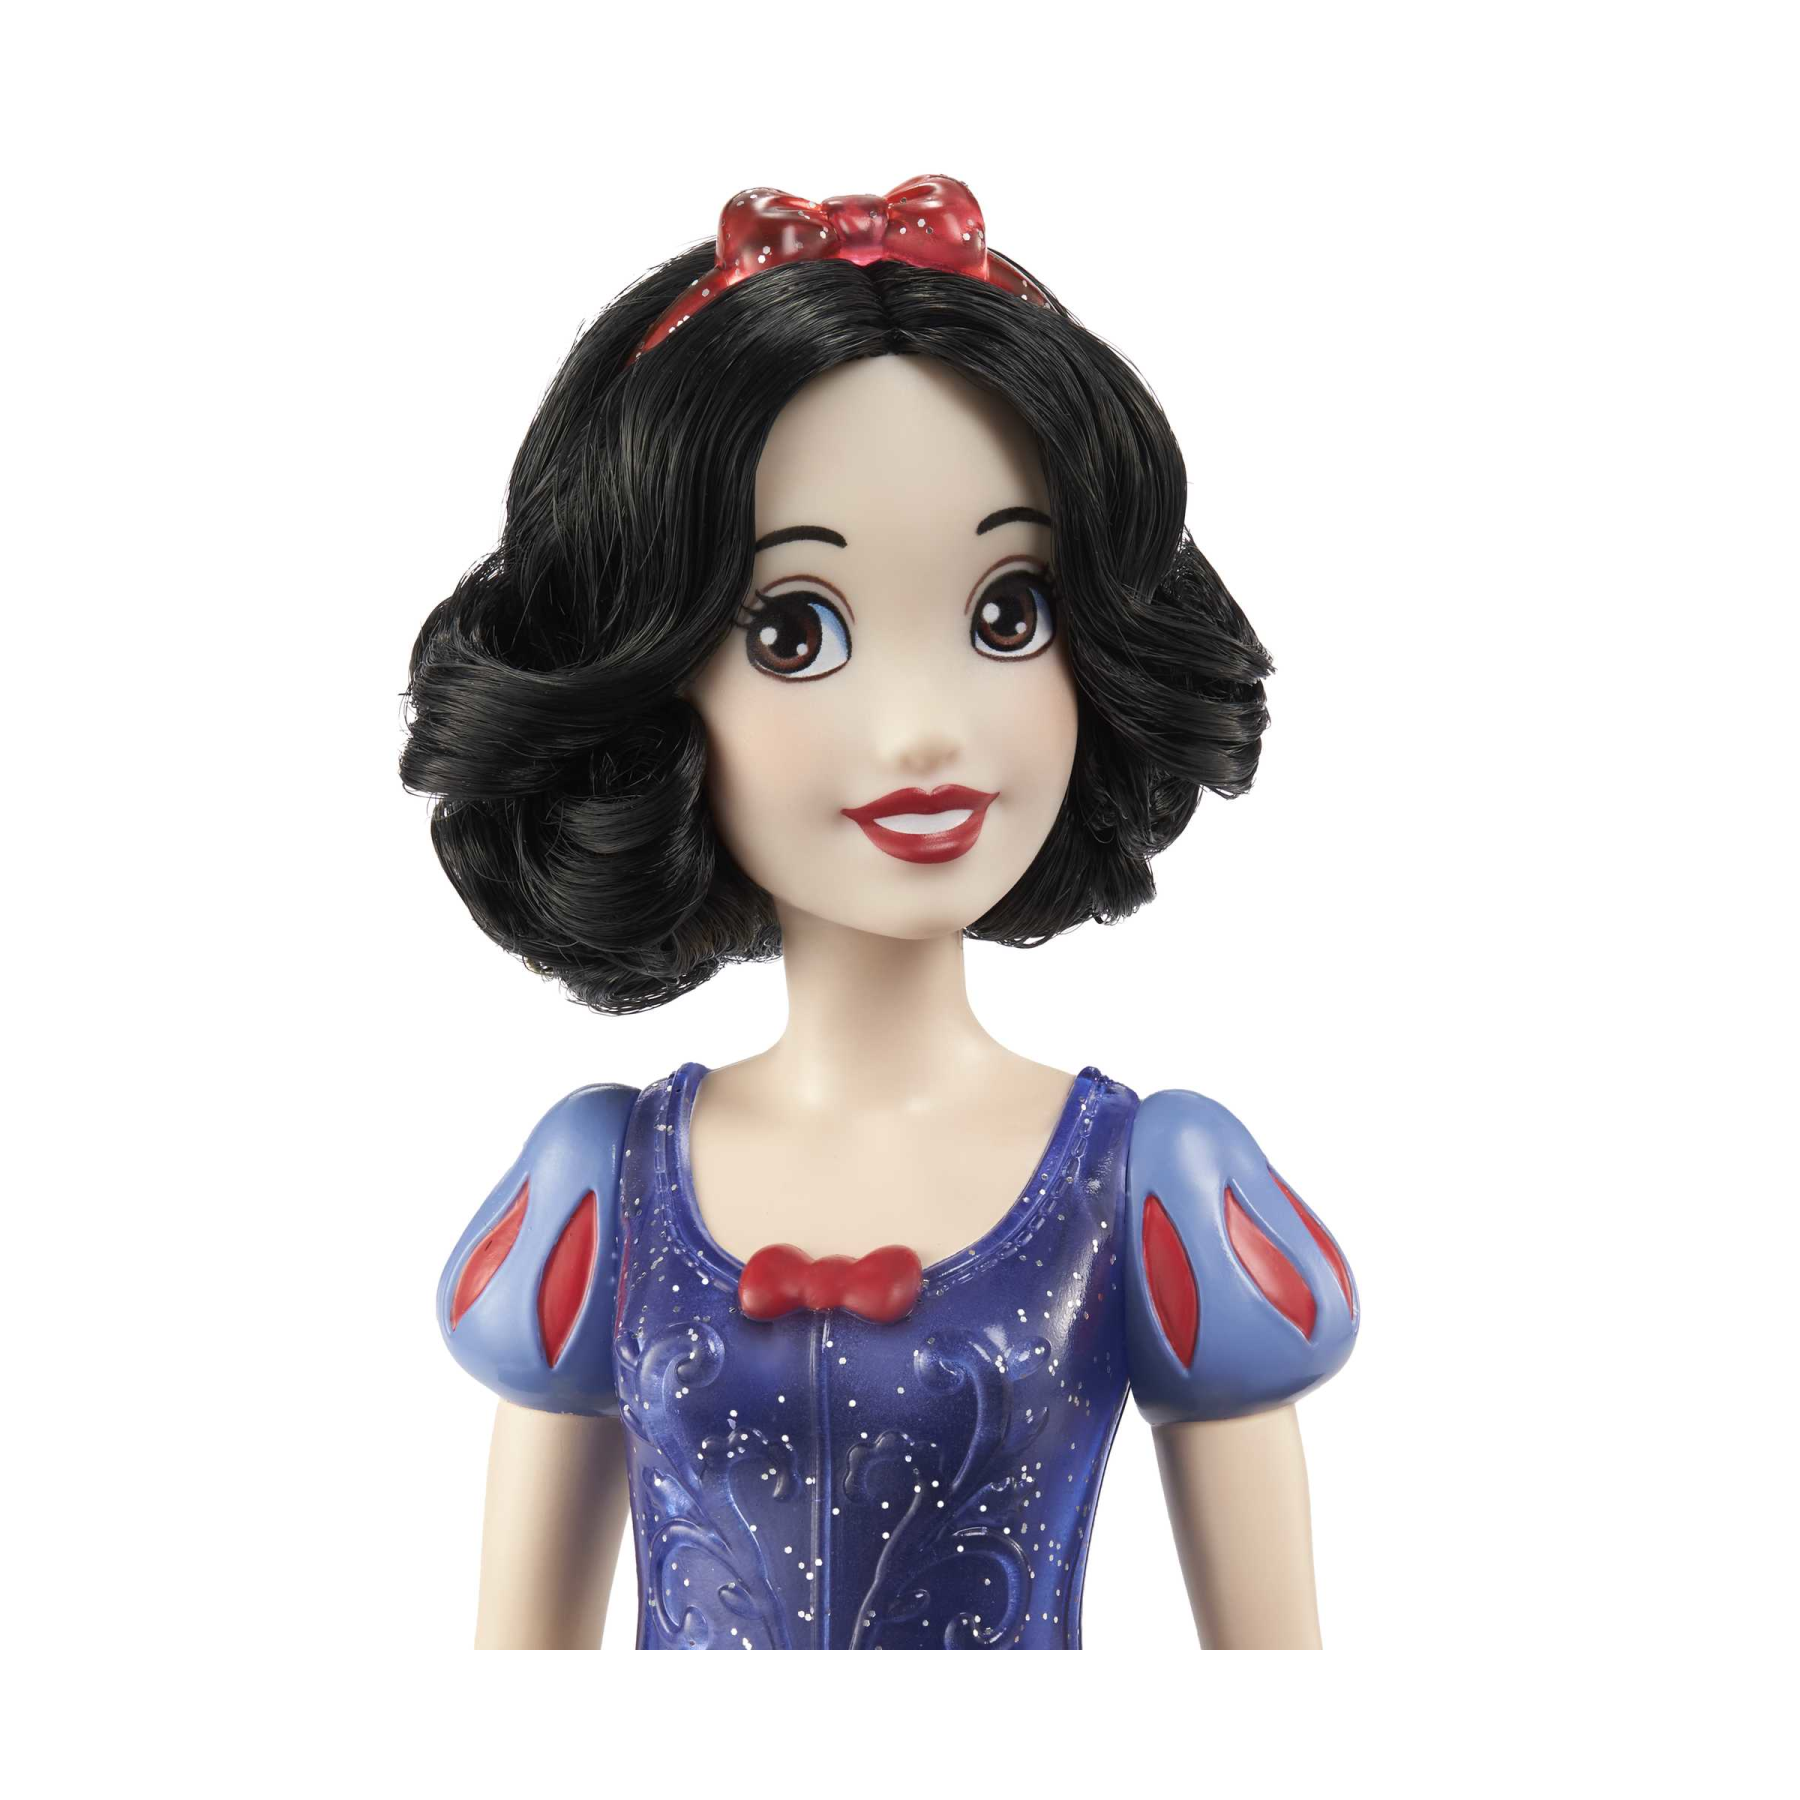 Disney princess - biancaneve bambola snodata, con capi e accessori scintillanti ispirati al film disney, giocattolo per bambini, 3+ anni, hlw08 - DISNEY PRINCESS